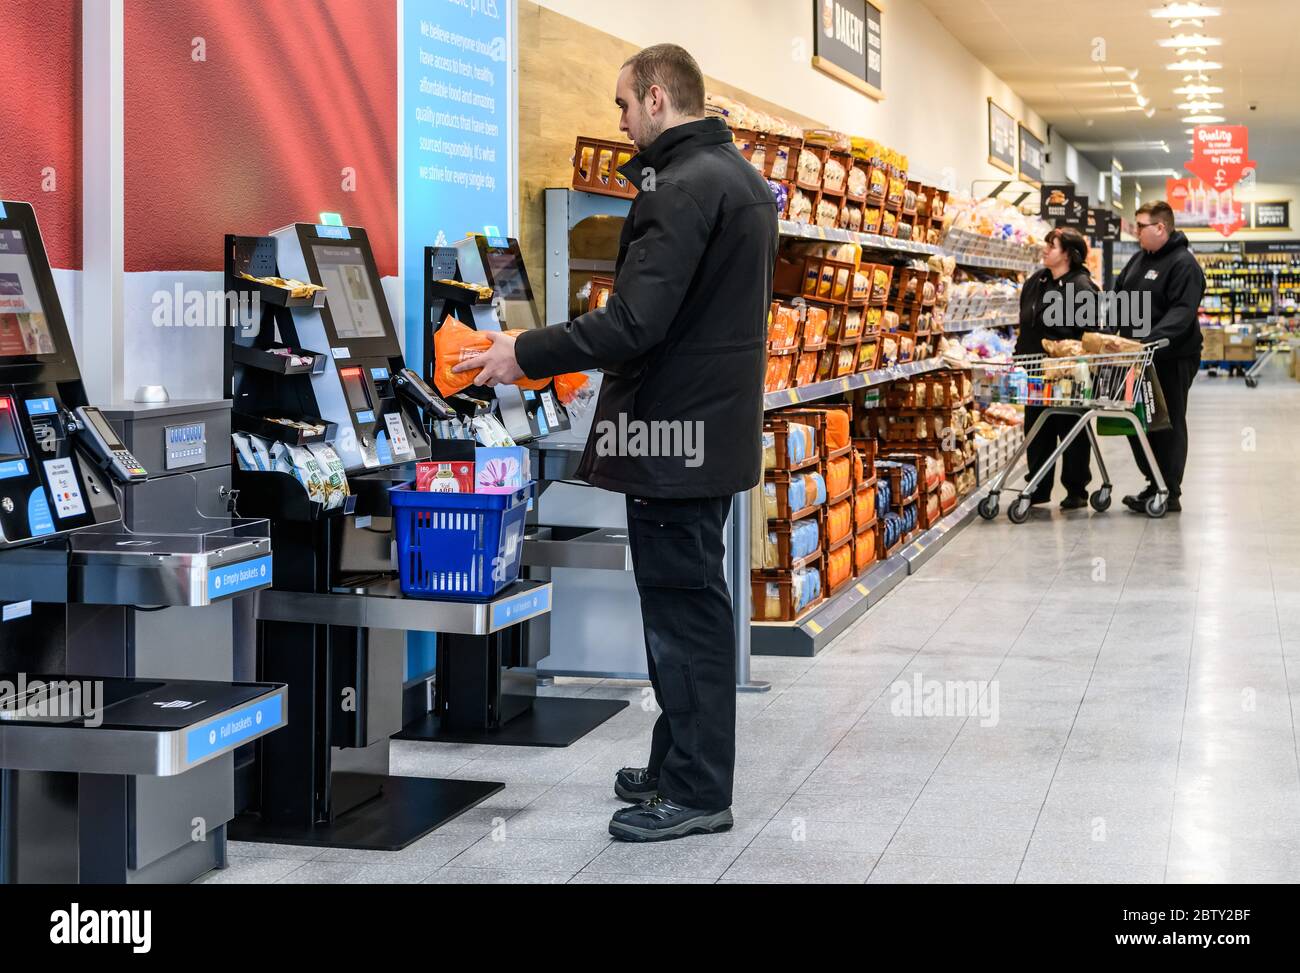 Caisses libre-service dans un supermarché Aldi à Tamworth, Staffordshire, Angleterre, Royaume-Uni. Banque D'Images